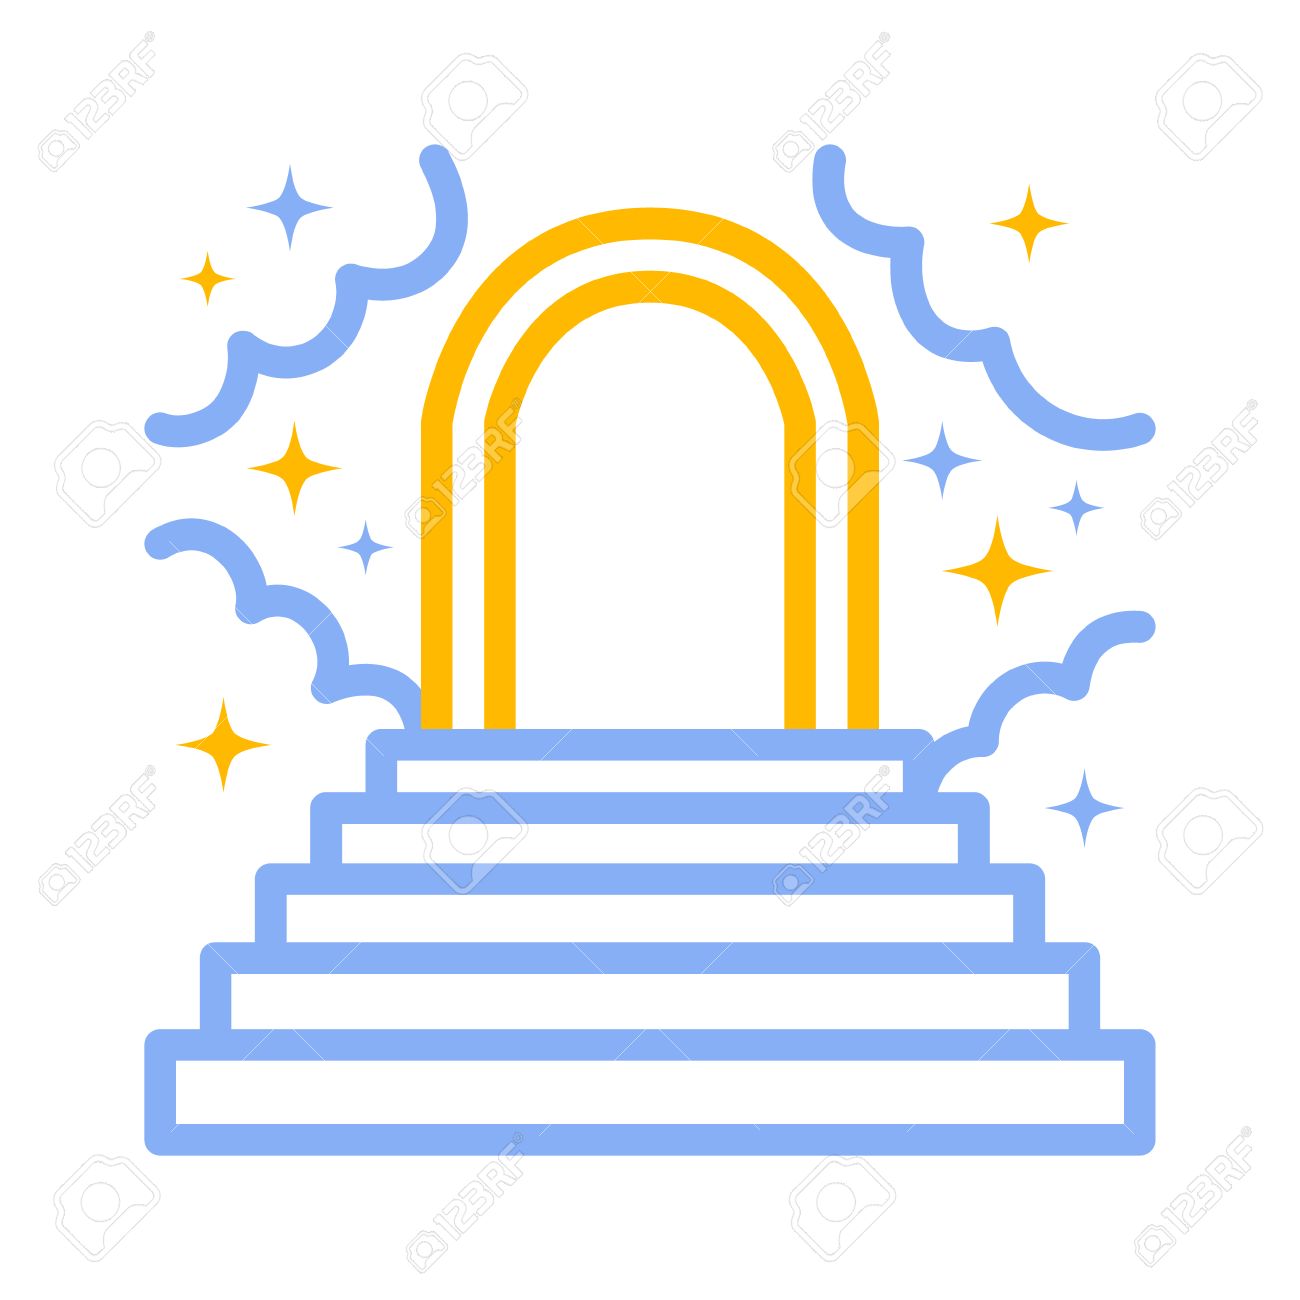 gate clipart heaven's gate